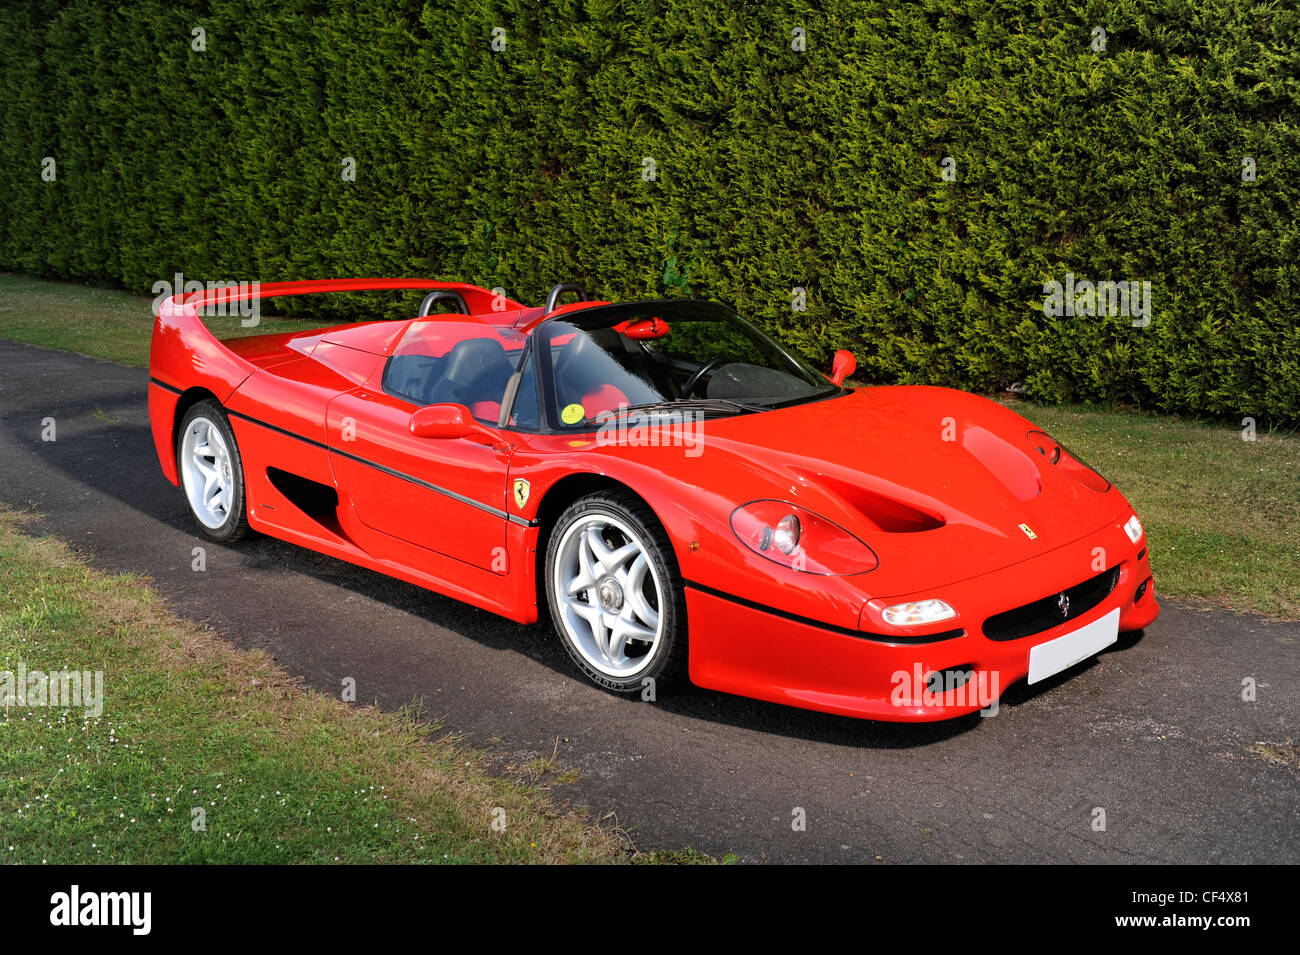 Ferrari f50 immagini e fotografie stock ad alta risoluzione - Alamy